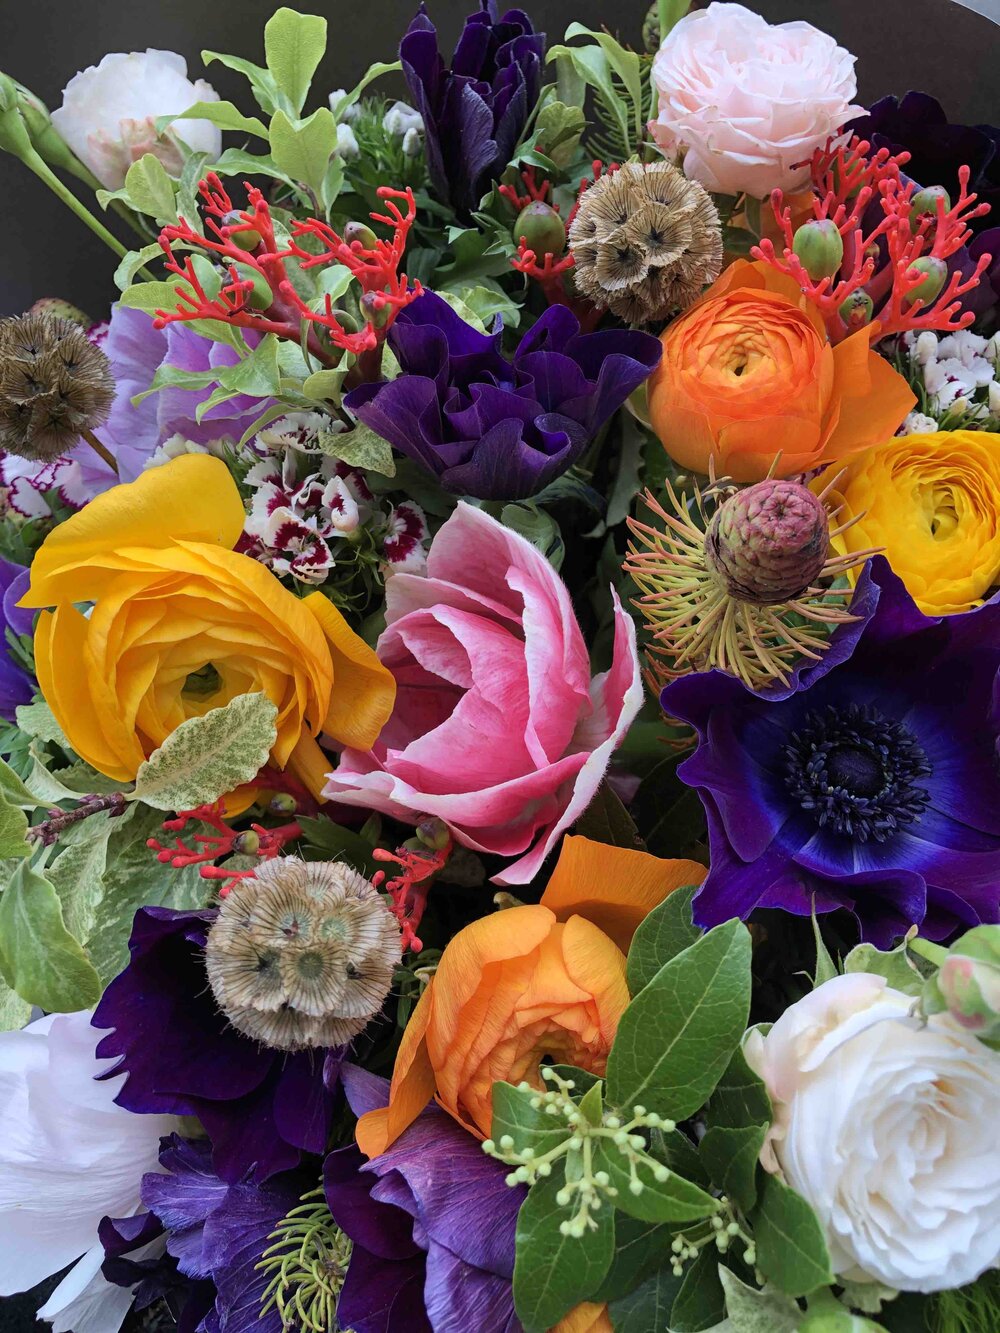 Bouquet de fleurs d'hiver — BOYA - Fleurs & Maison